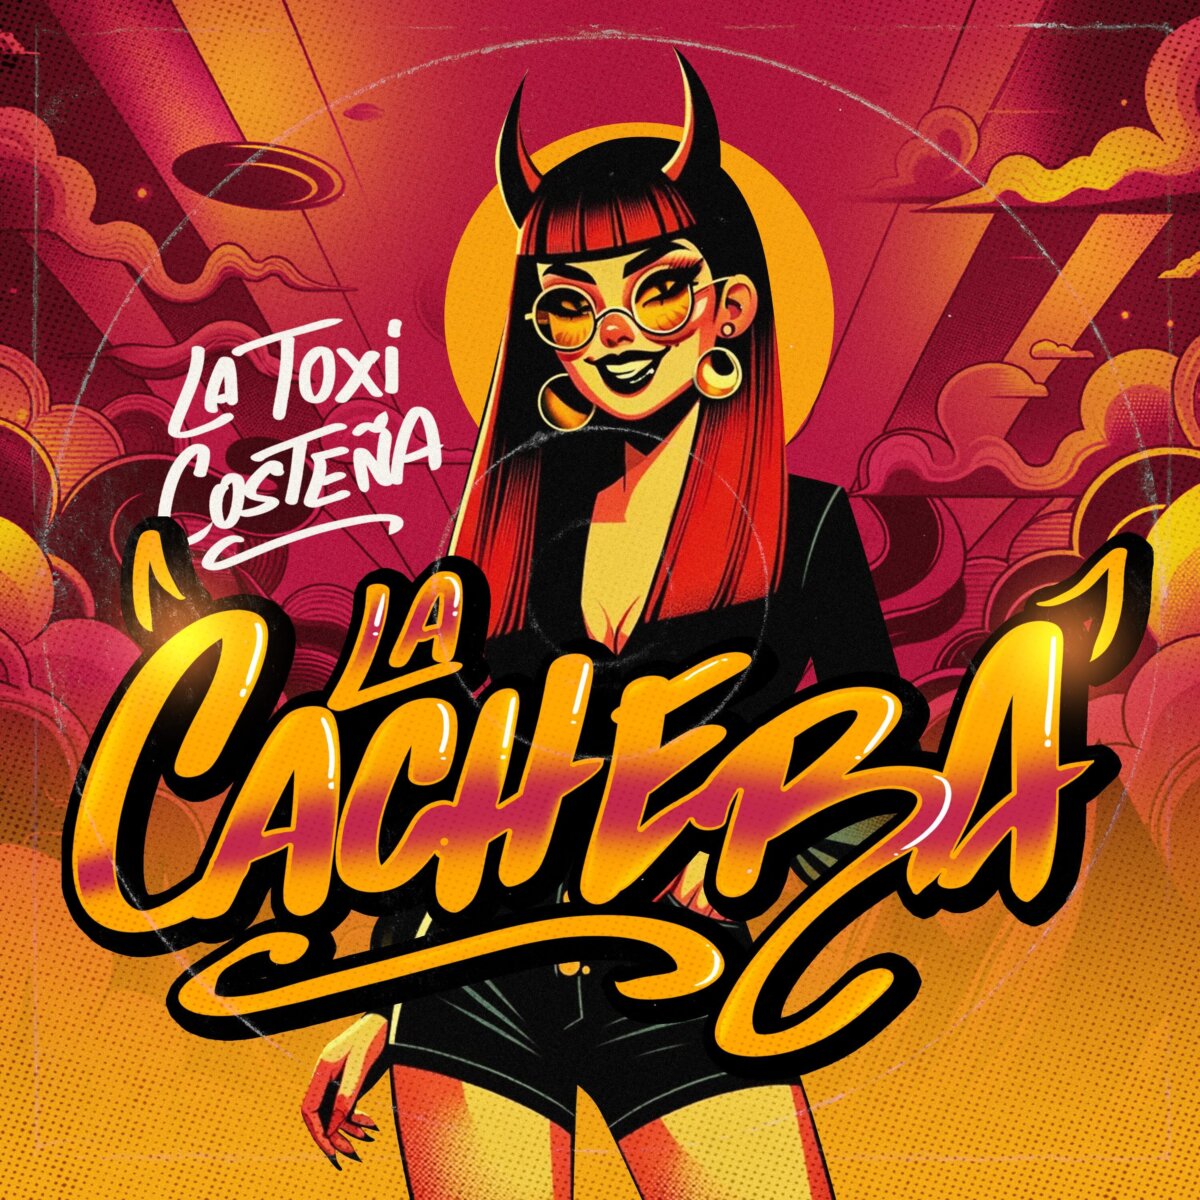 'La Toxi Costeña' lanza su nuevo sencillo 'La Cachera' La 'Toxi Costeña' fue conocida a través de internet en el año 2021 por su sencillo 'Macta Llega'; ahora volvió con un mensaje de empoderamiento a través de 'La Cachera'.